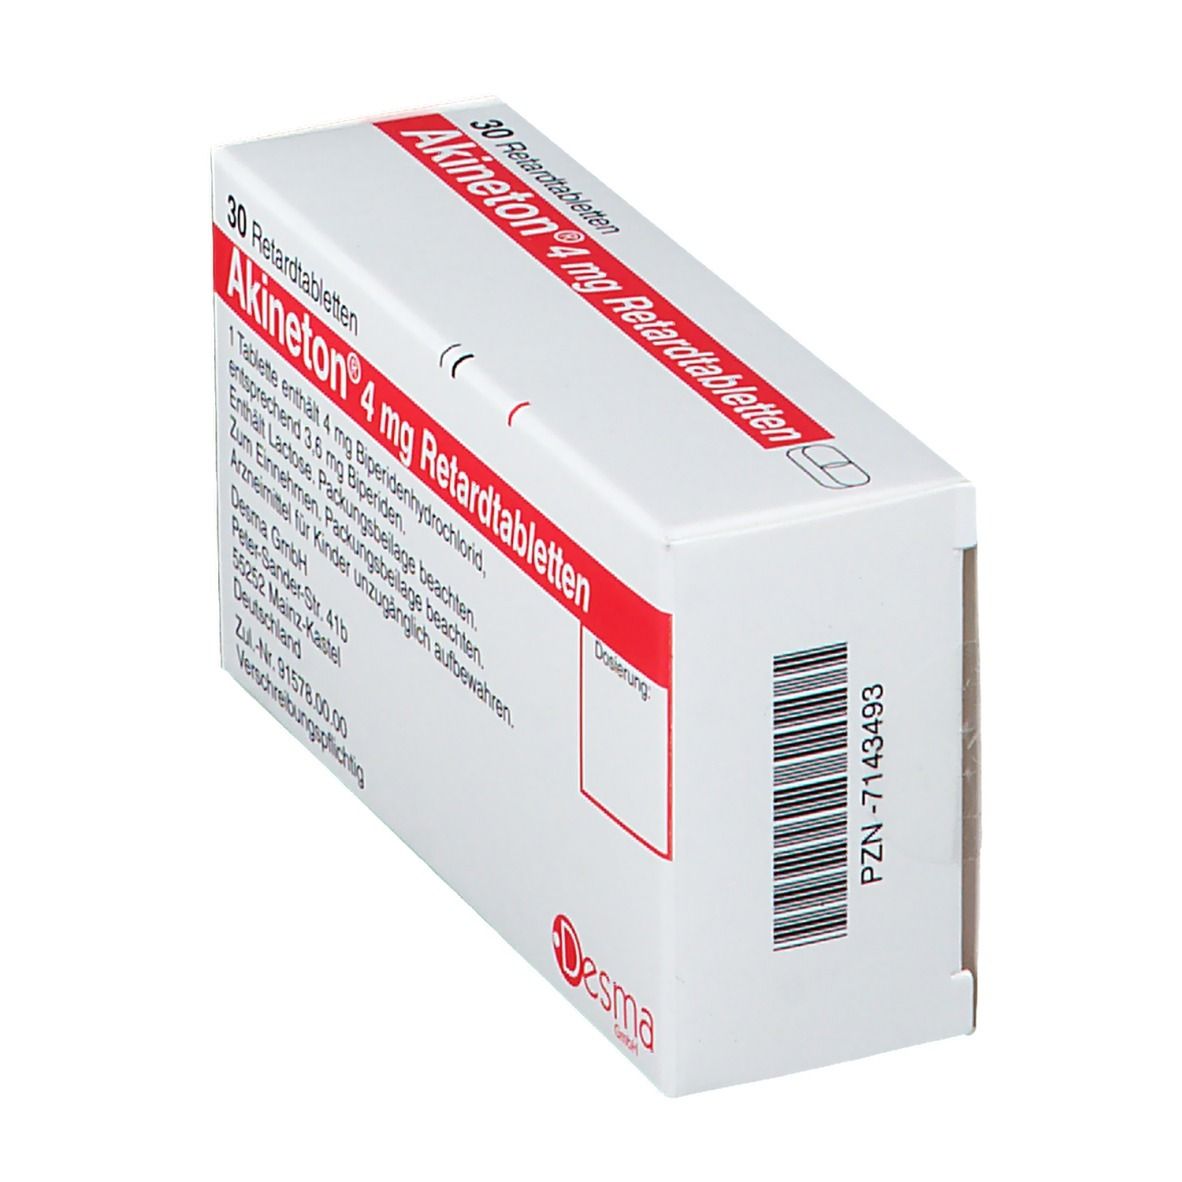 Akineton® 4 mg